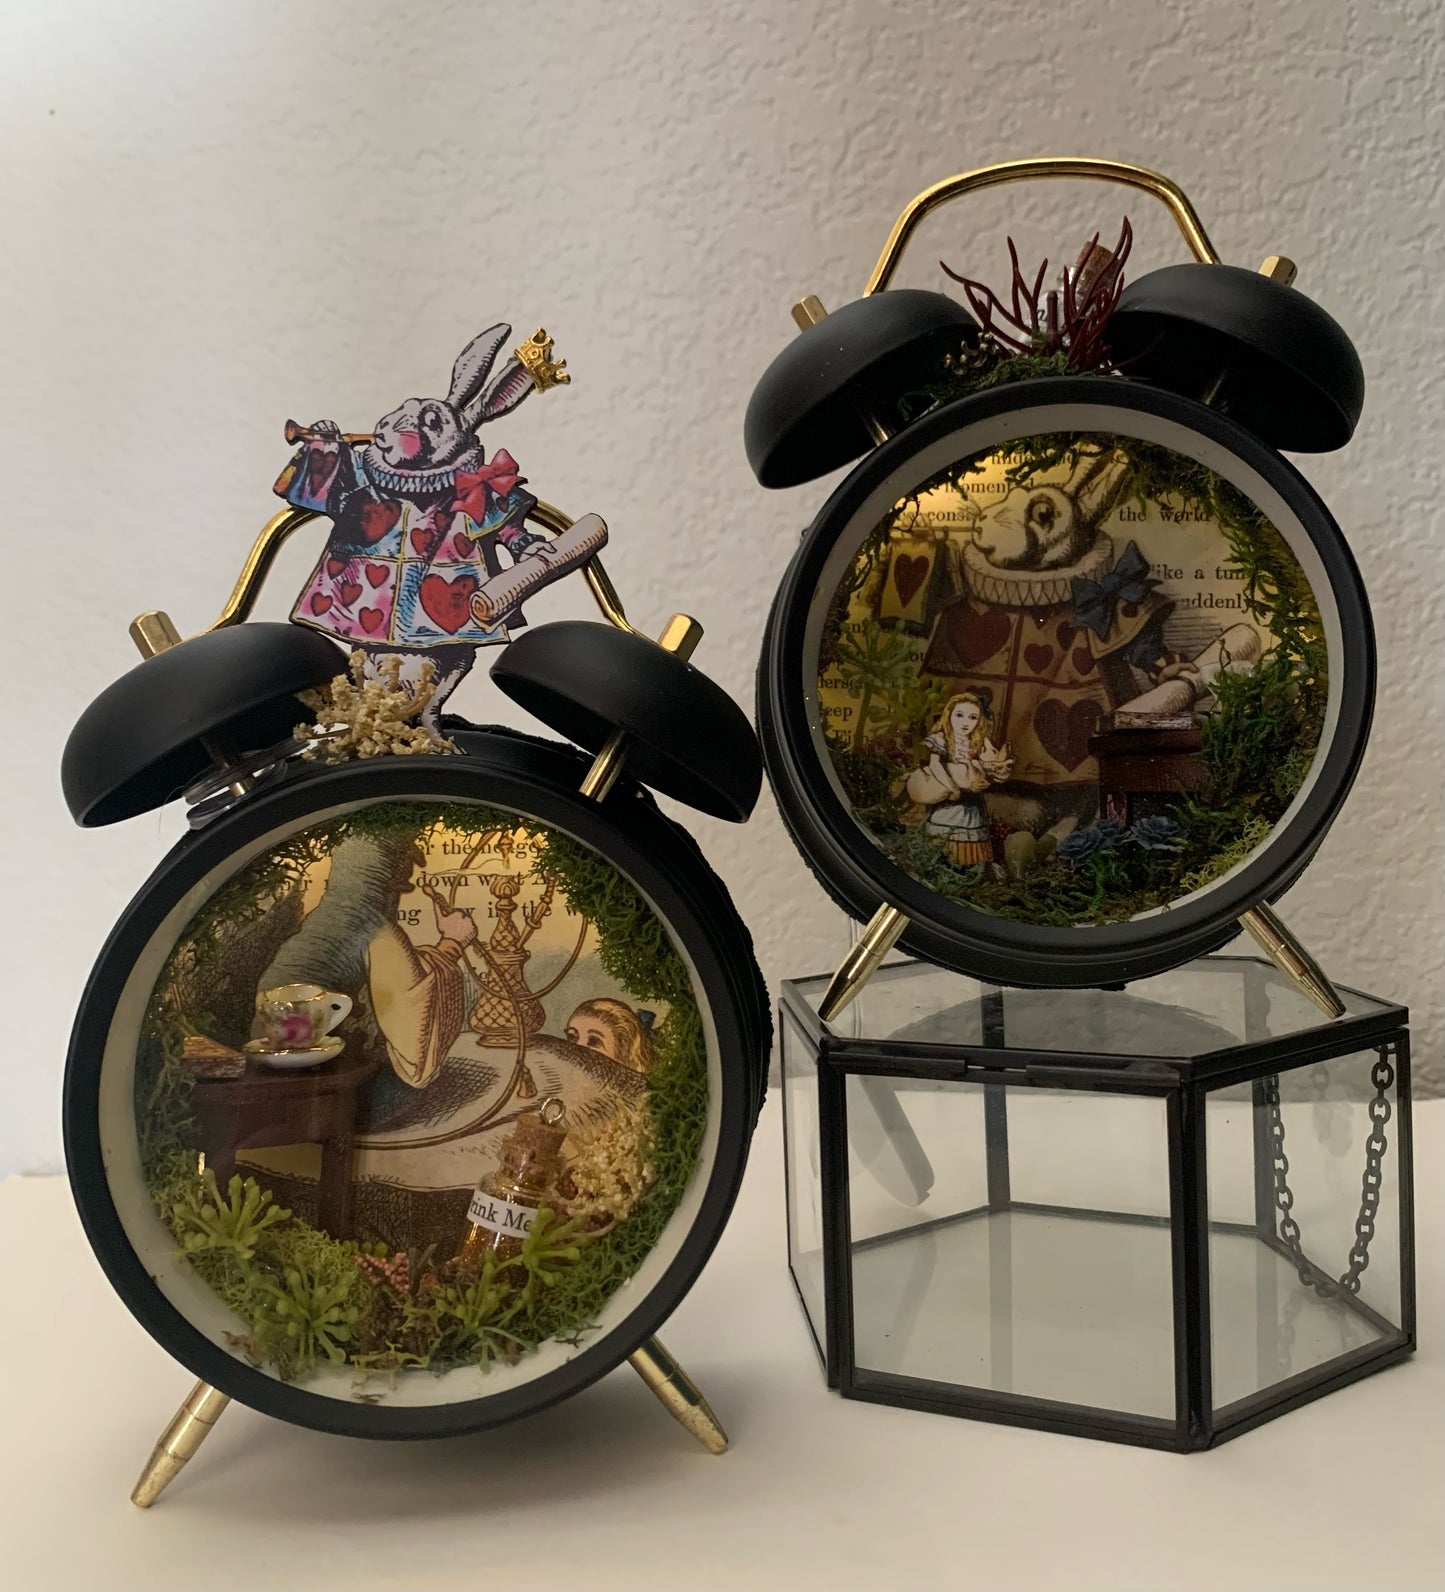 "Tick Tock" - Alice in Wonderland Clock Diorama Workshop - Saturday, May 25th, at 4:00-6:00pm